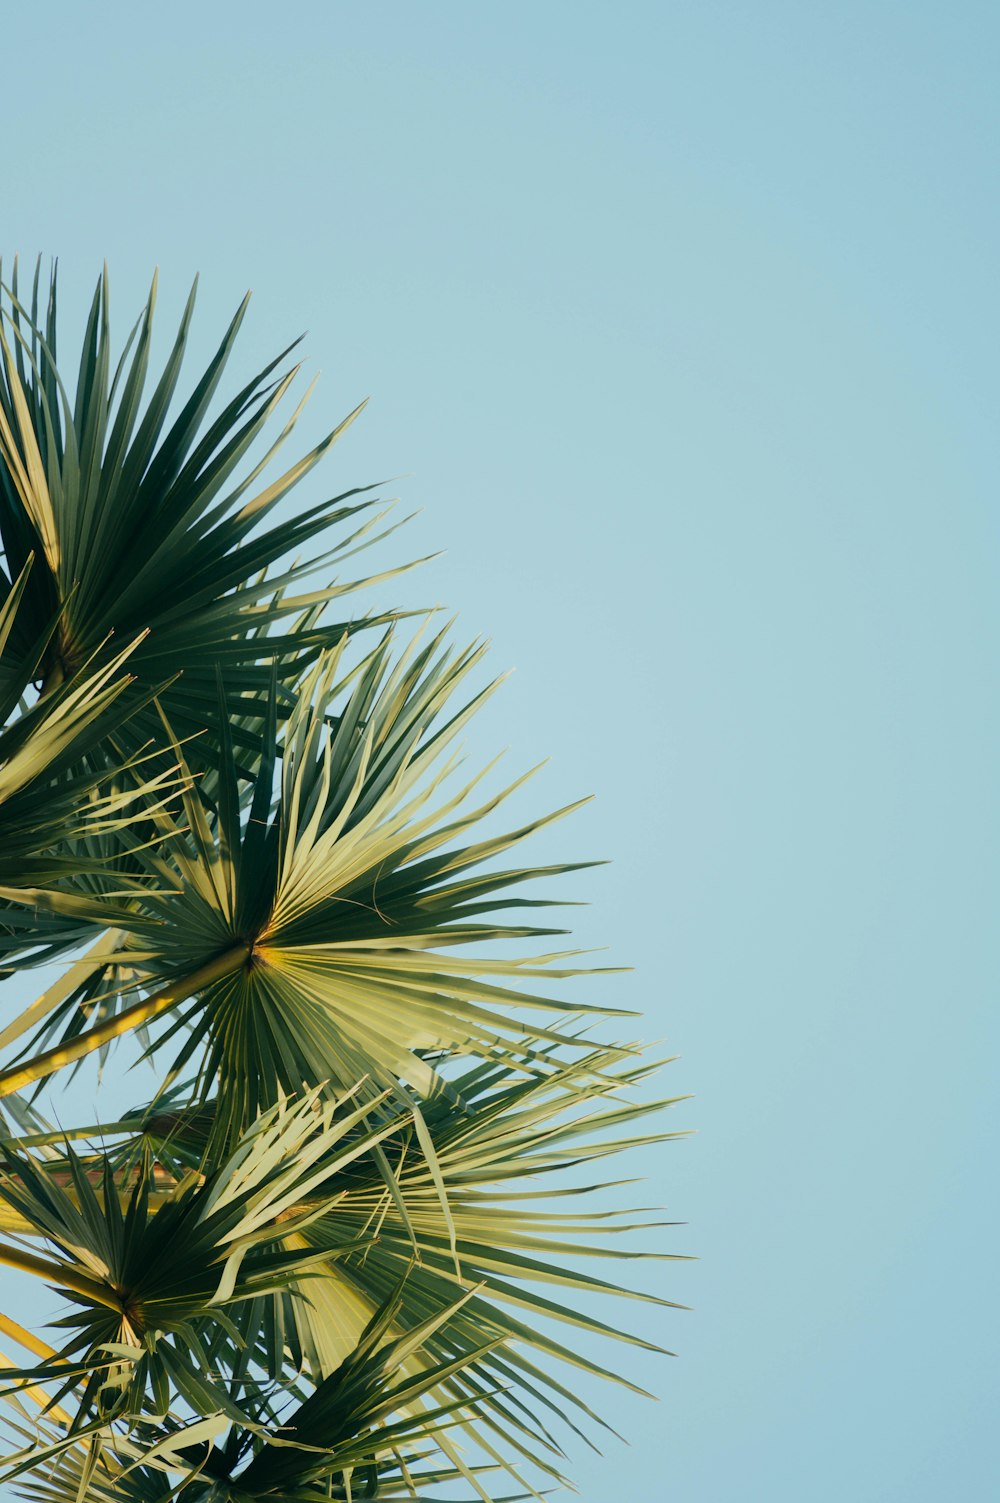 fan palm tree under blue sky